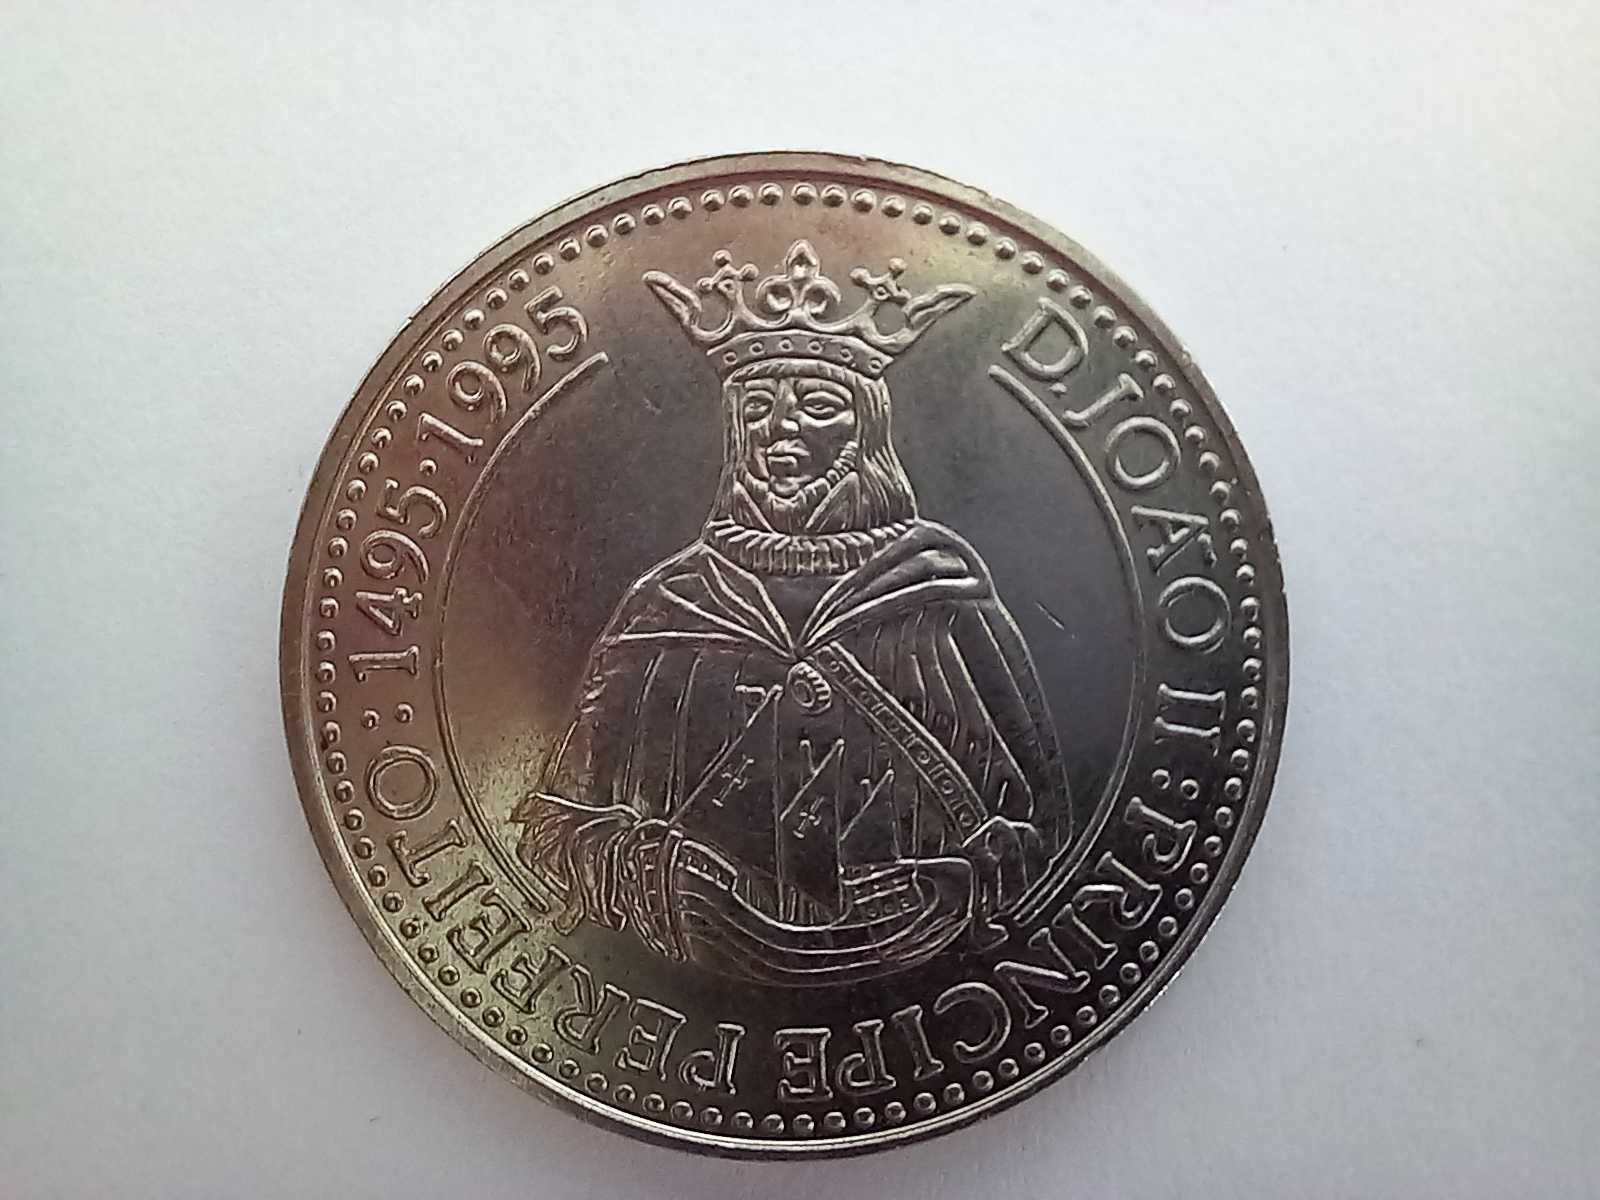 Portugal 200 escudos, ND (1994) - D. João II - O Príncipe Perfeito